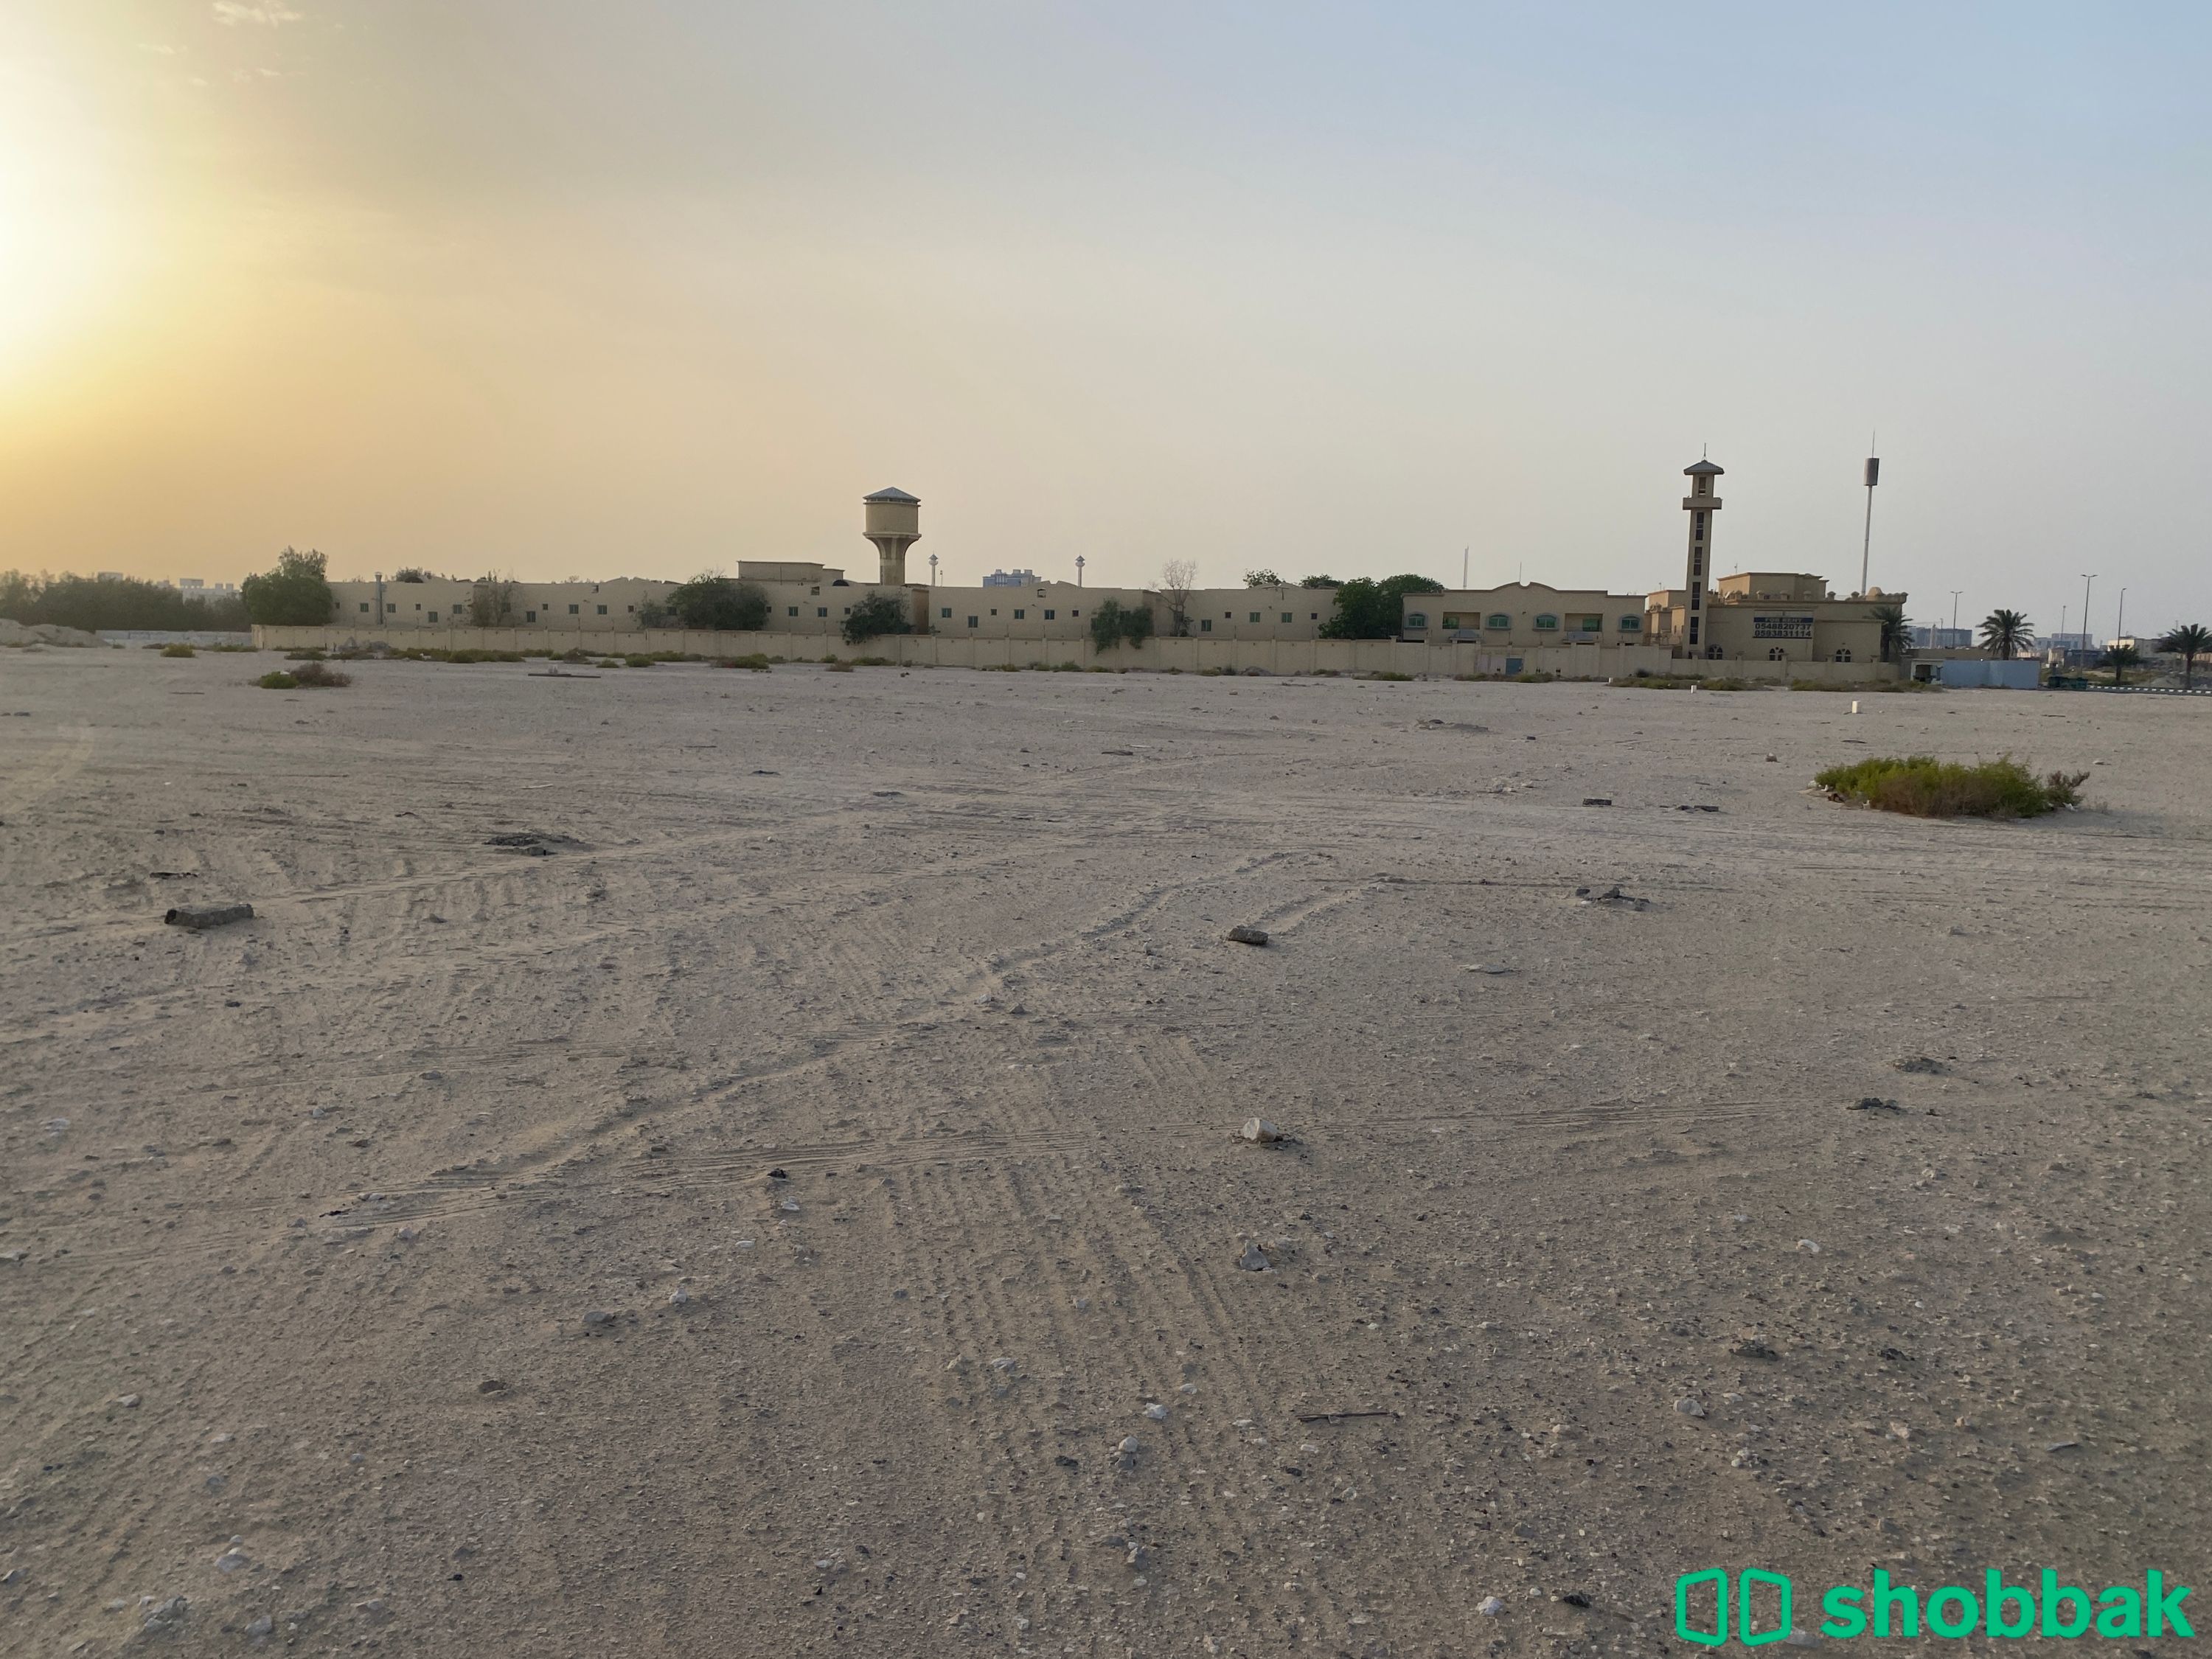 أرض للبيع | شارع اوس بن مساعدة حي الفيصلية ، الدمام  شباك السعودية